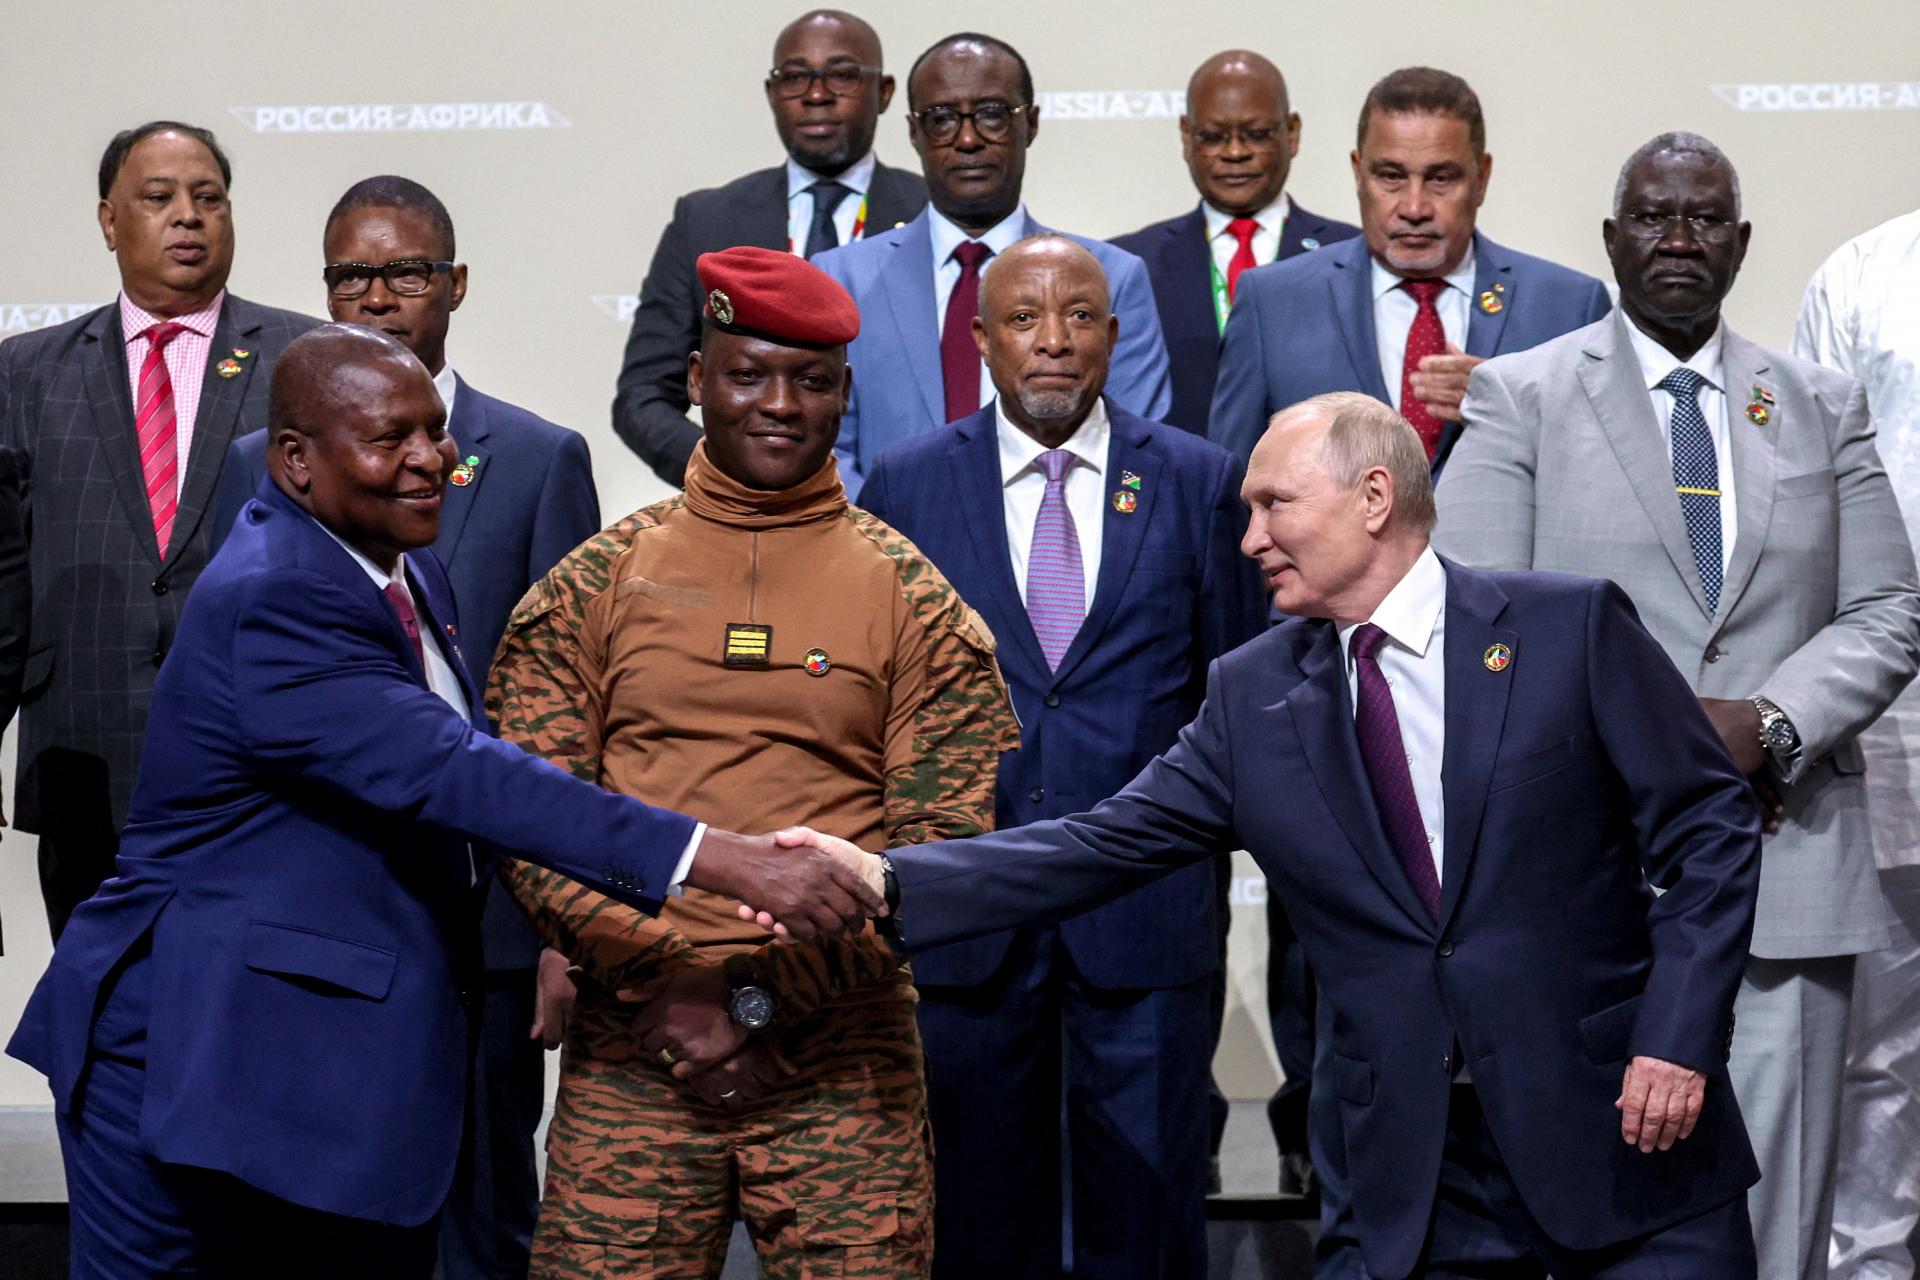 Rusko podpísalo dohodu o vojenskej spolupráci so 40 africkými krajinami